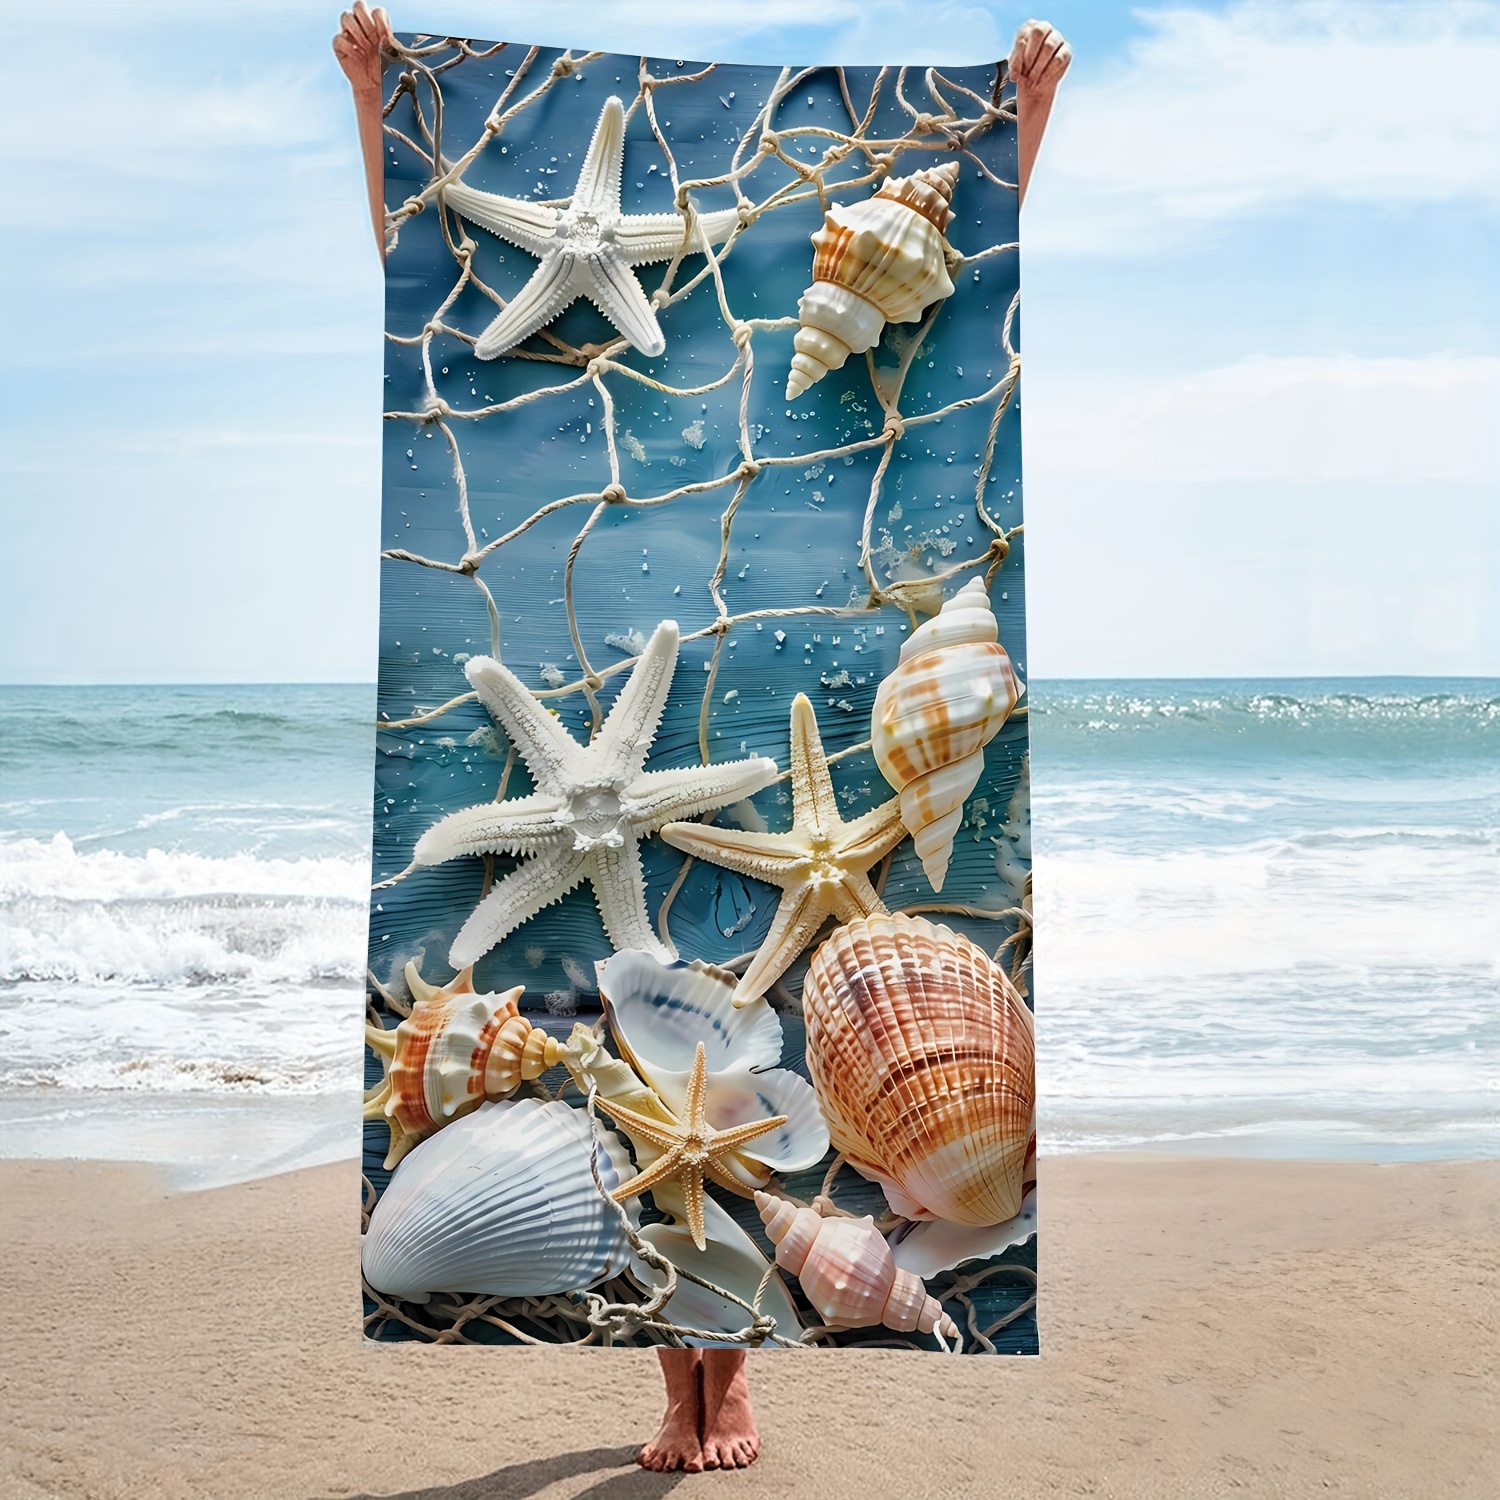 

Serviette de plage oversize en microfibre bleu marine avec étoile de mer et coquillage, résistante, séchage rapide, lavable, essentielle pour l'été, le camping, la piscine et les voyages.